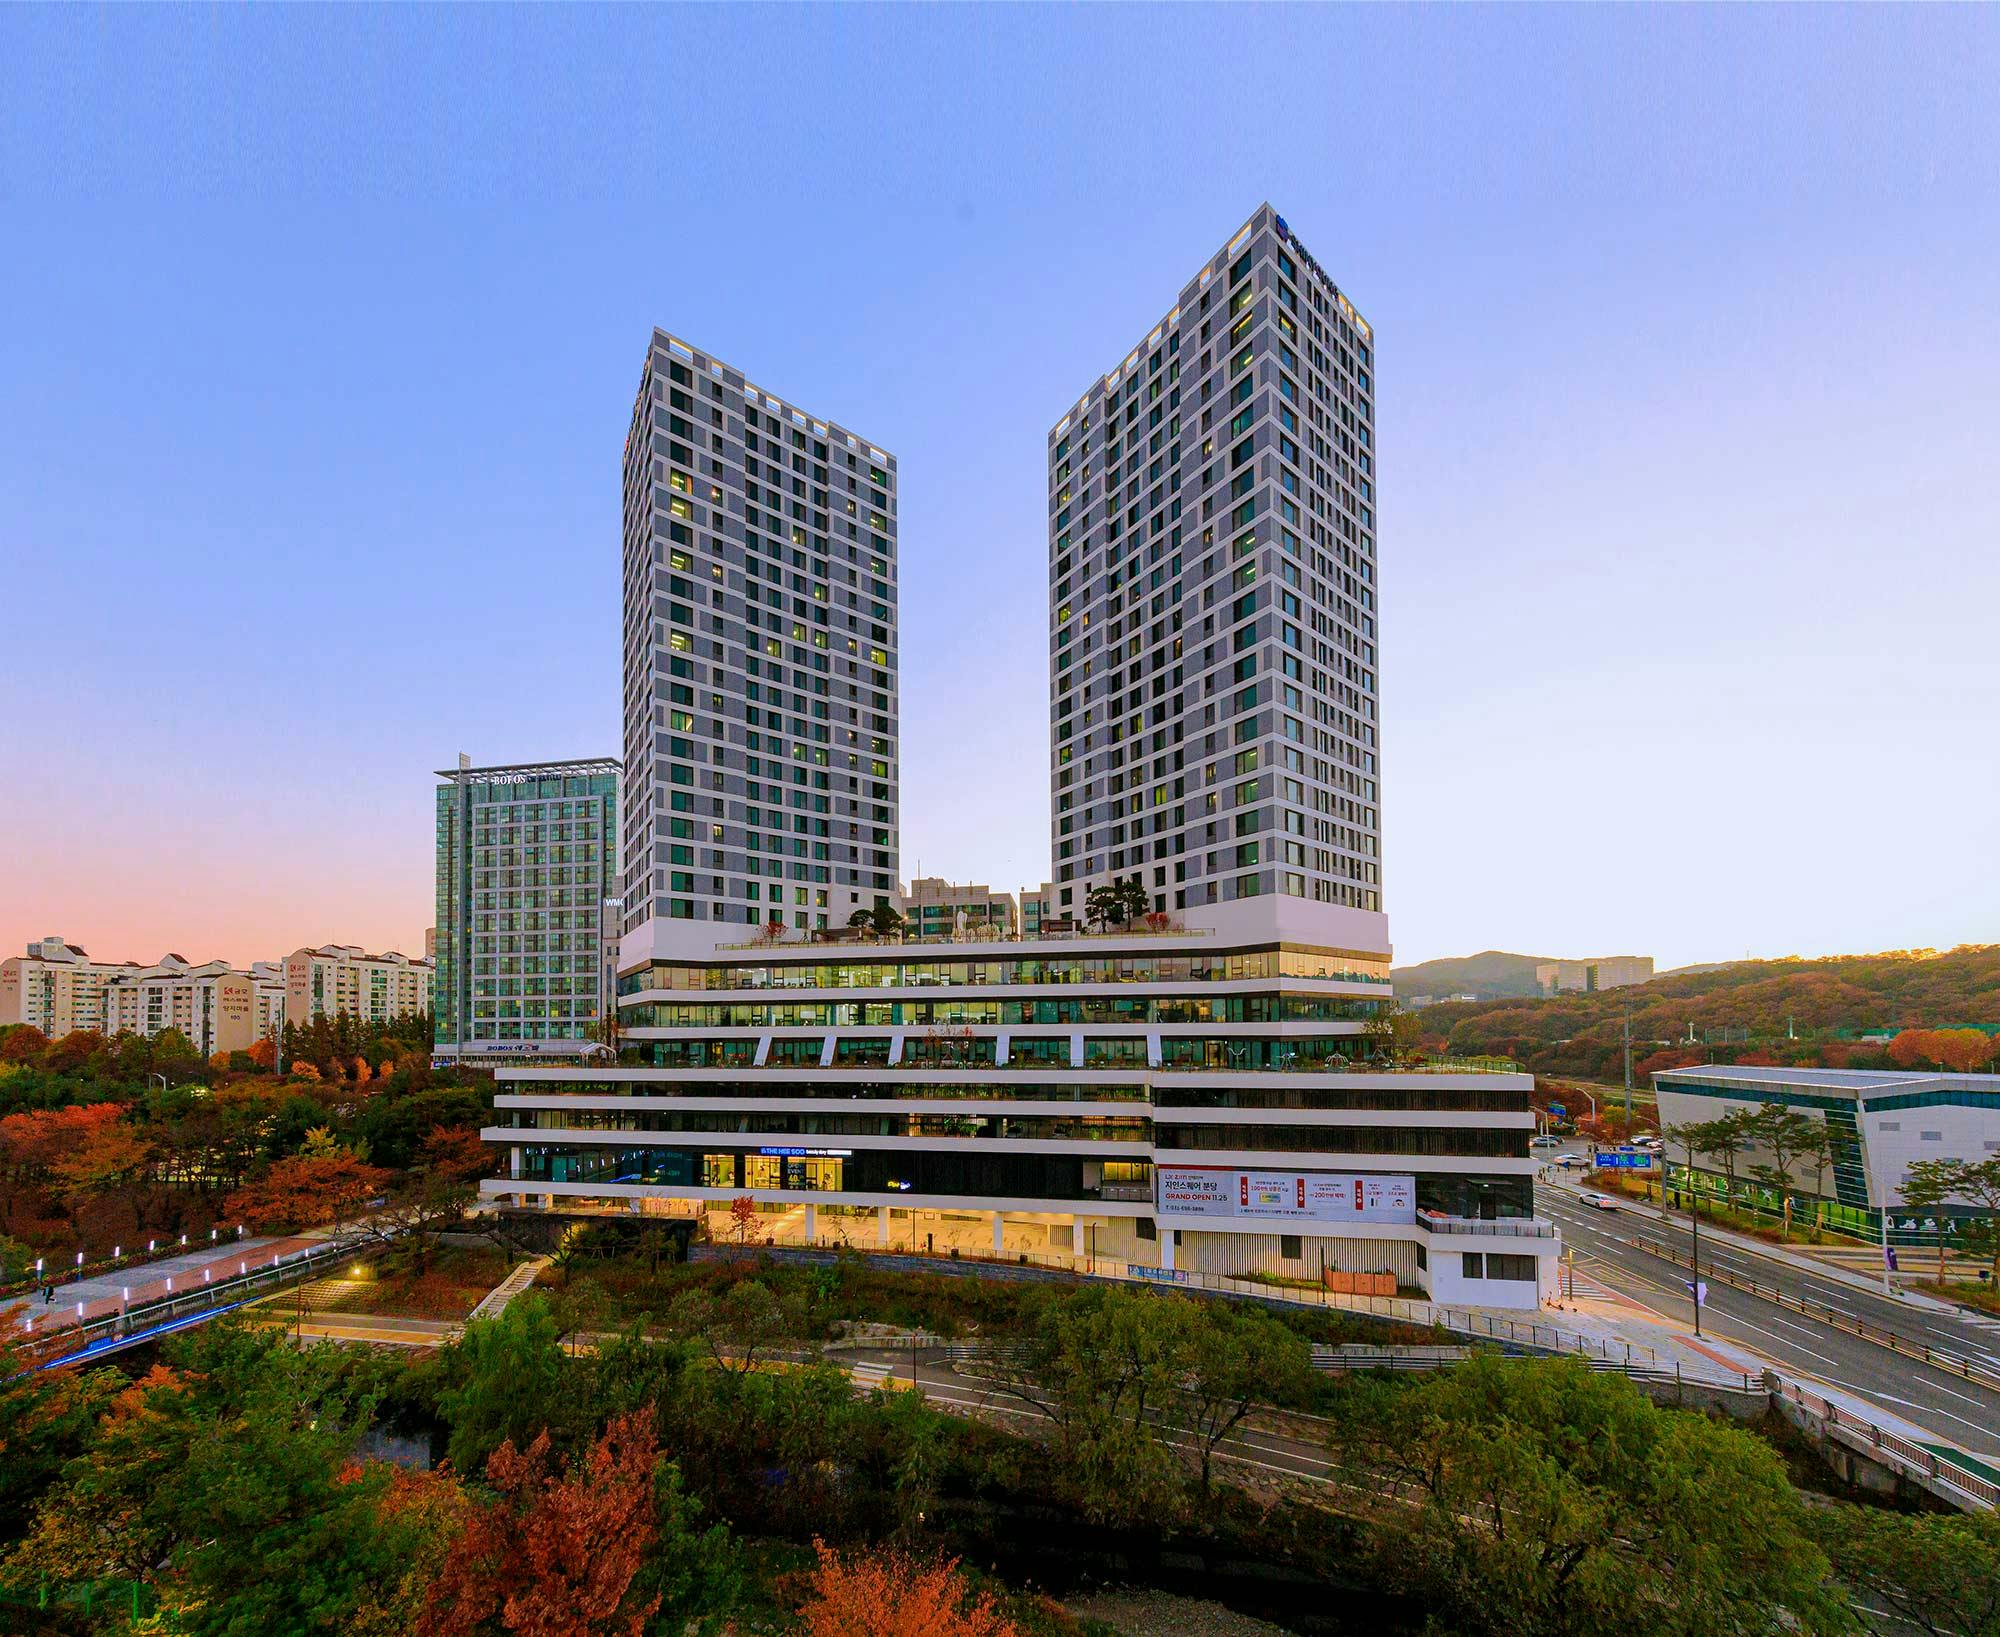 Numéro d'image 33 de la section actuelle de Korea: Ode to contemporary architecture amidst Sakura blossoms thanks to DKTN de Cosentino France